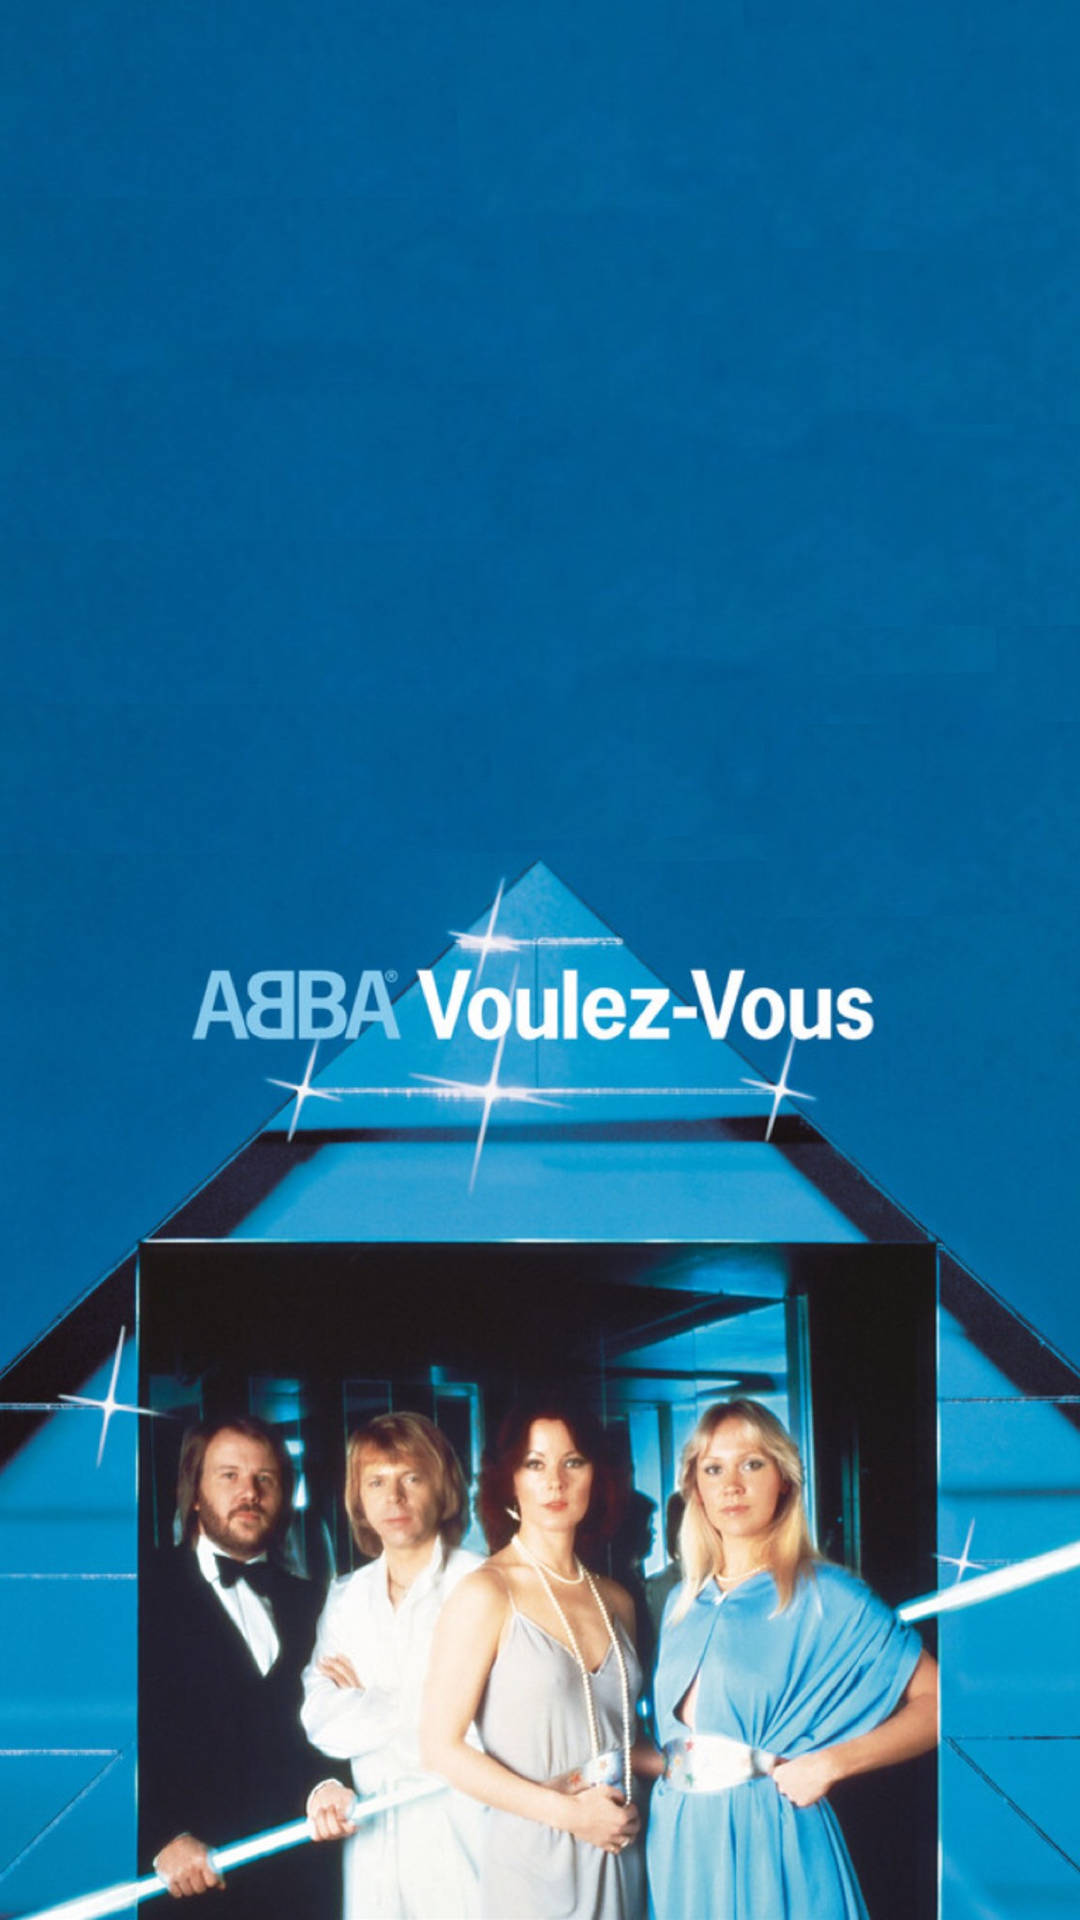 Abba Voulez-vous Album Background